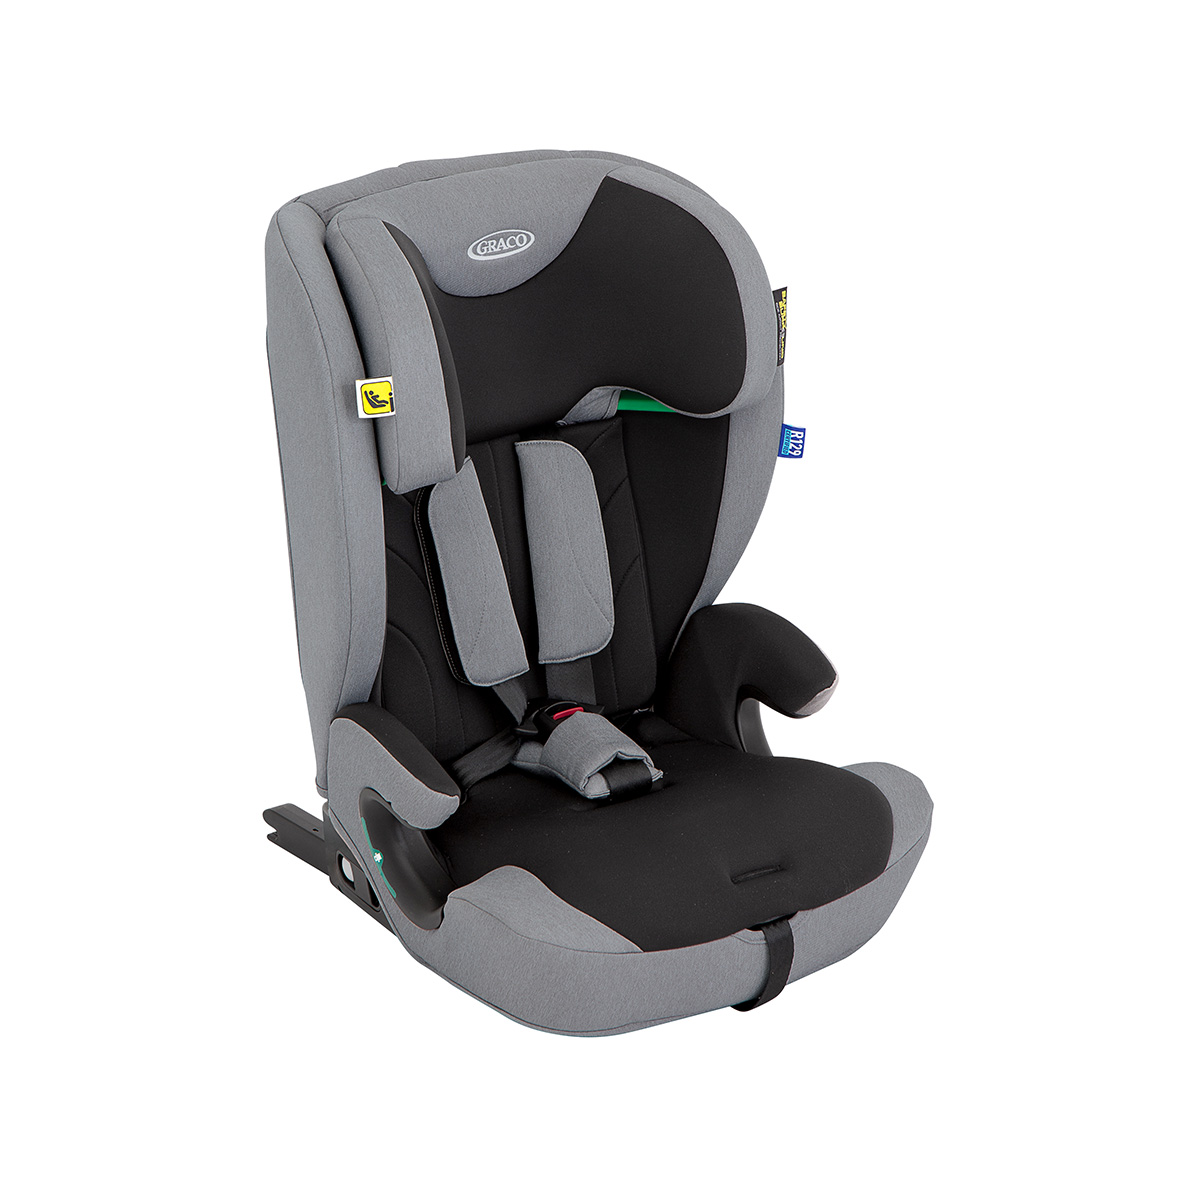 Dreiviertelwinkel des mitwachsenden 2-in-1 Kindersitzes Graco® Energi™ i-Size R129 mit integriertem 5-Punkt-Gurtsystem.